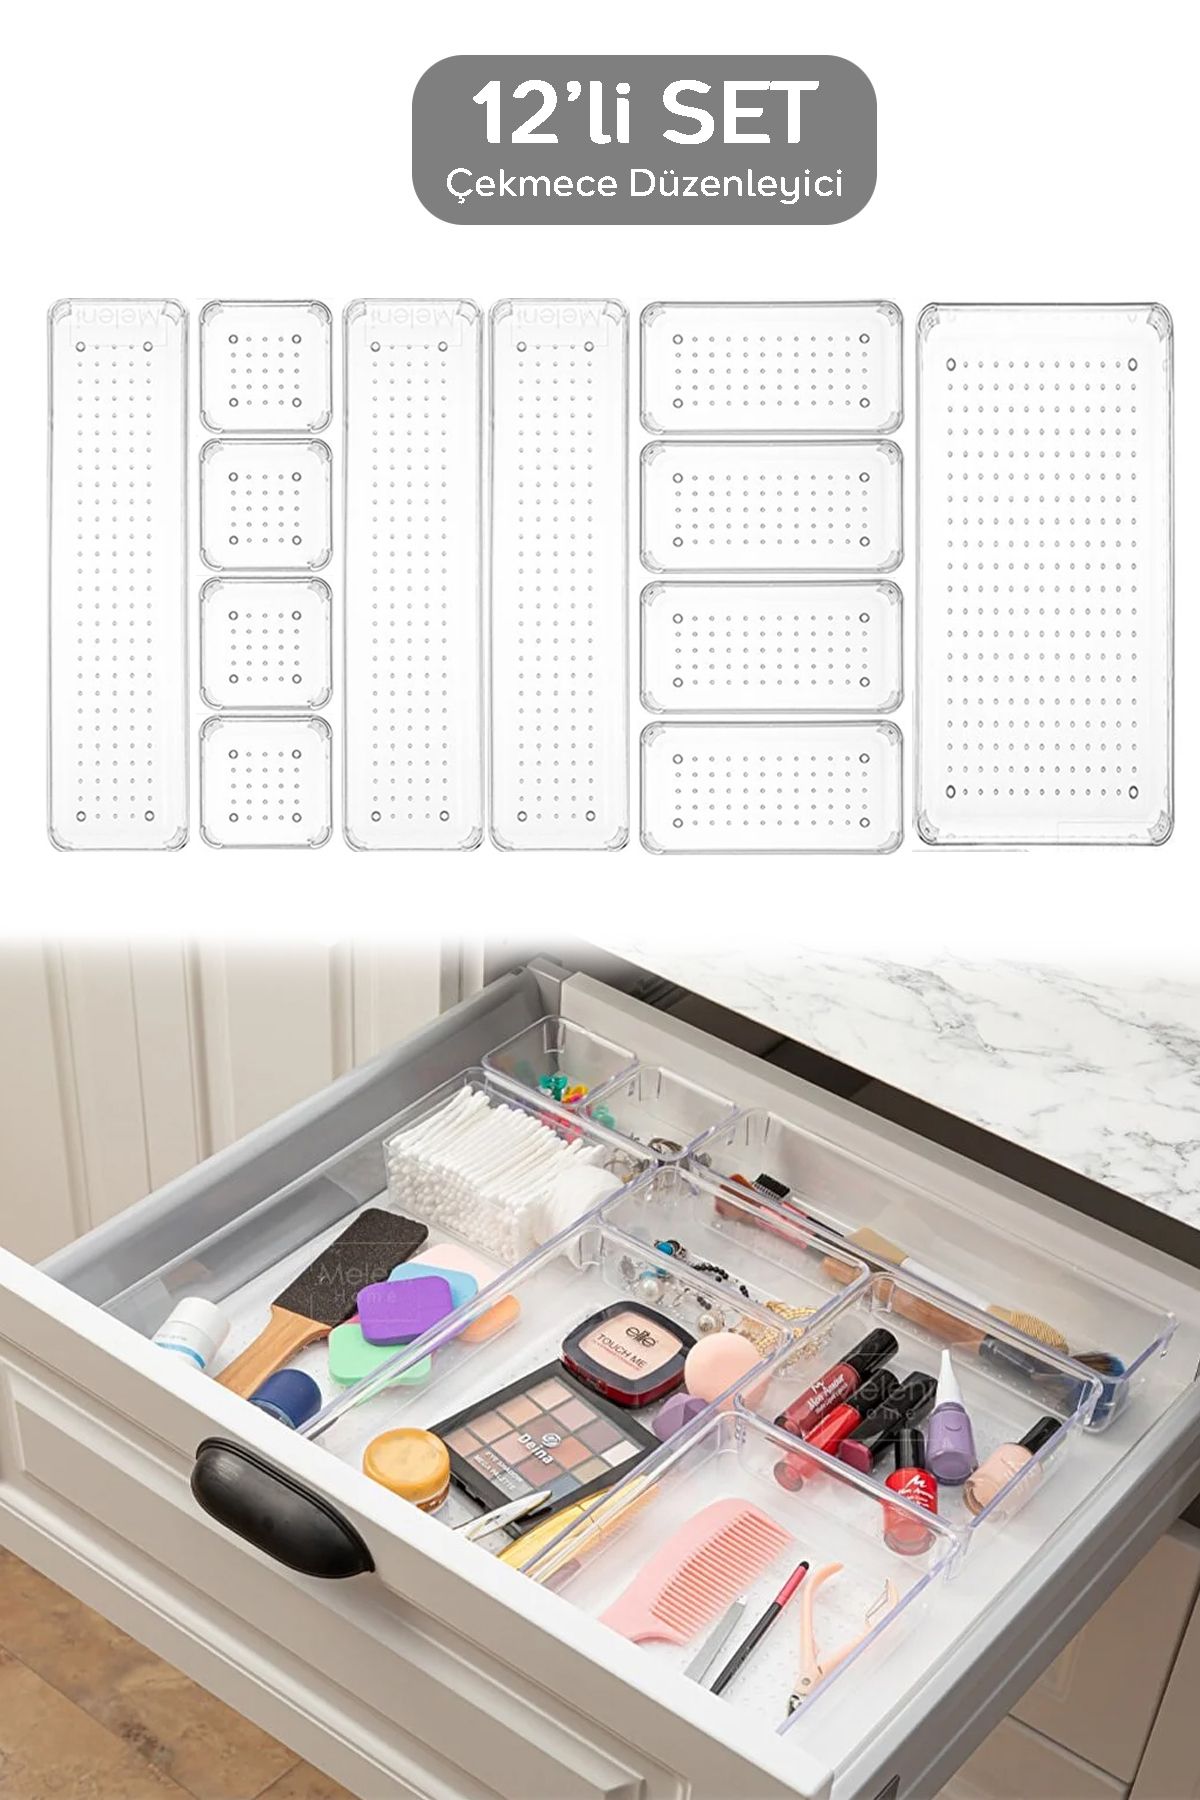 Meleni Home 12 Parça Şeffaf Tasarım Modüler Saklama Kabı - Çekmece Içi Düzenleyici, Banyo Makyaj Takı Organizeri